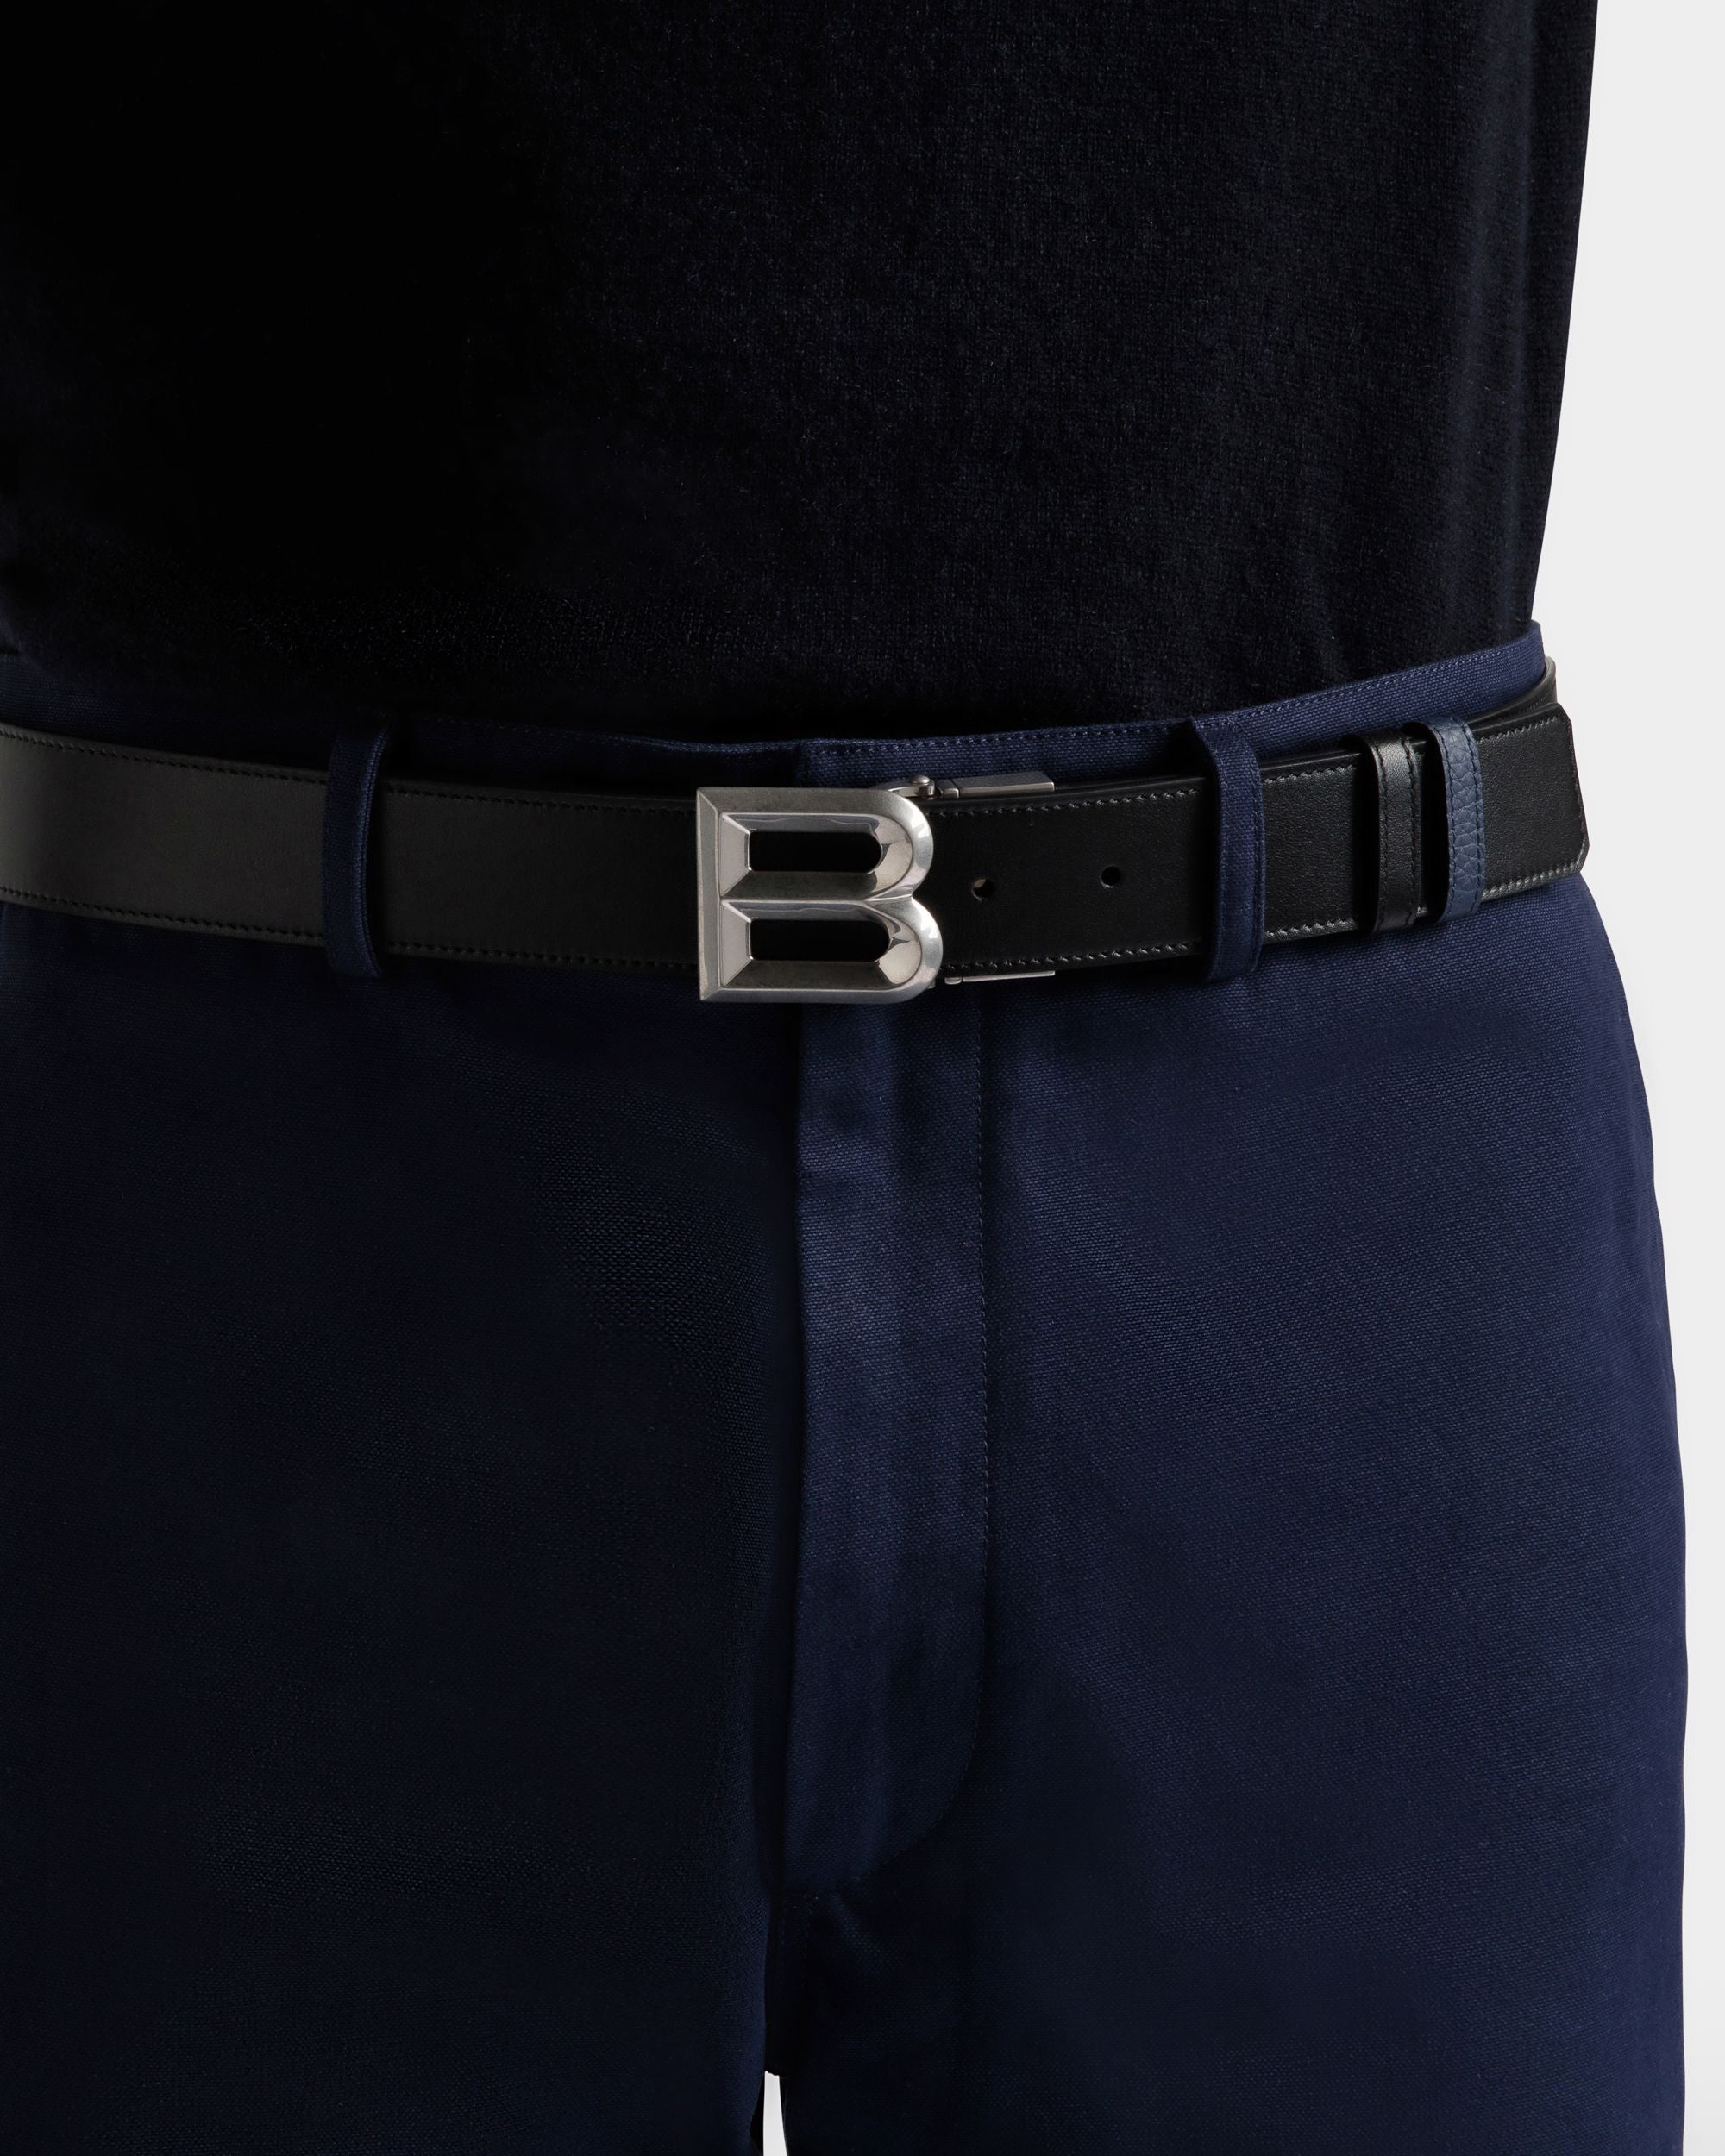 B Bold 35 mm | Verstellbarer Herren-Wendegürtel aus Leder in Schwarz und Marineblau | Bally | Model getragen Vorderseite